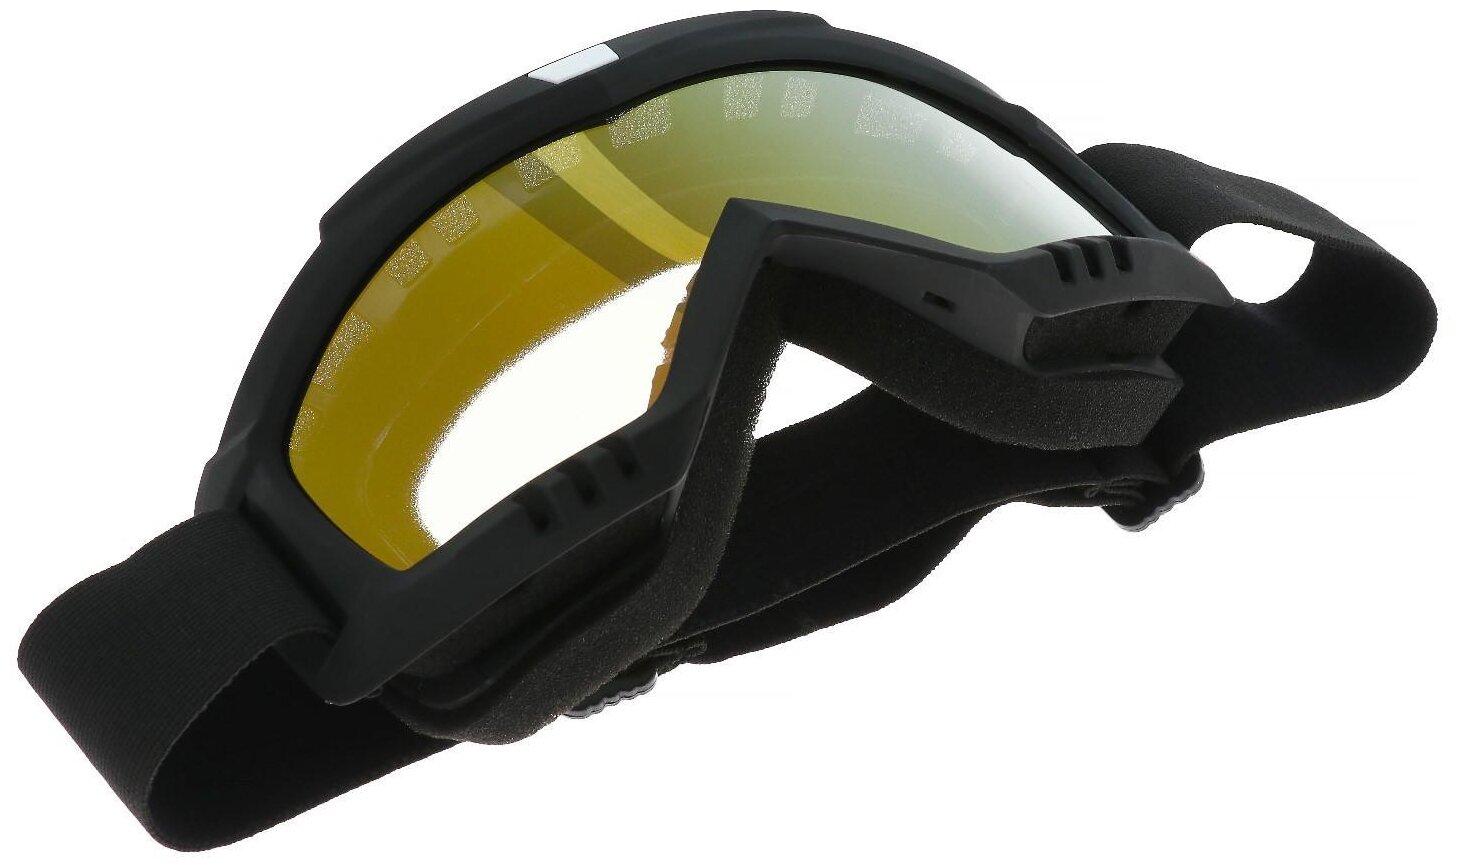 Очки-маска для езды на мототехнике, стекло золотой хром, цвет черный, ОМ-14